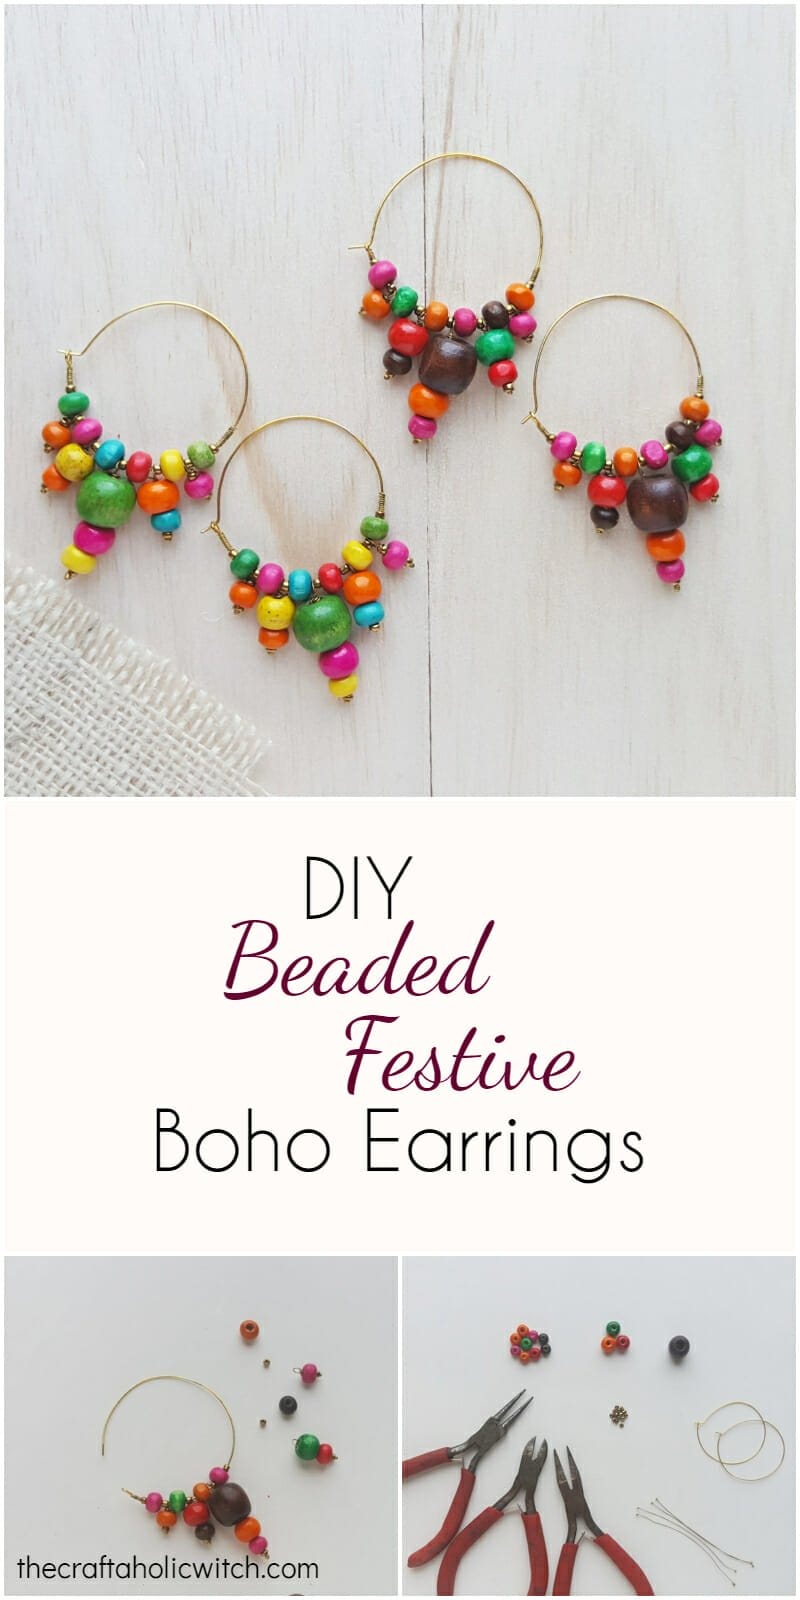 beaded baho style earrings 